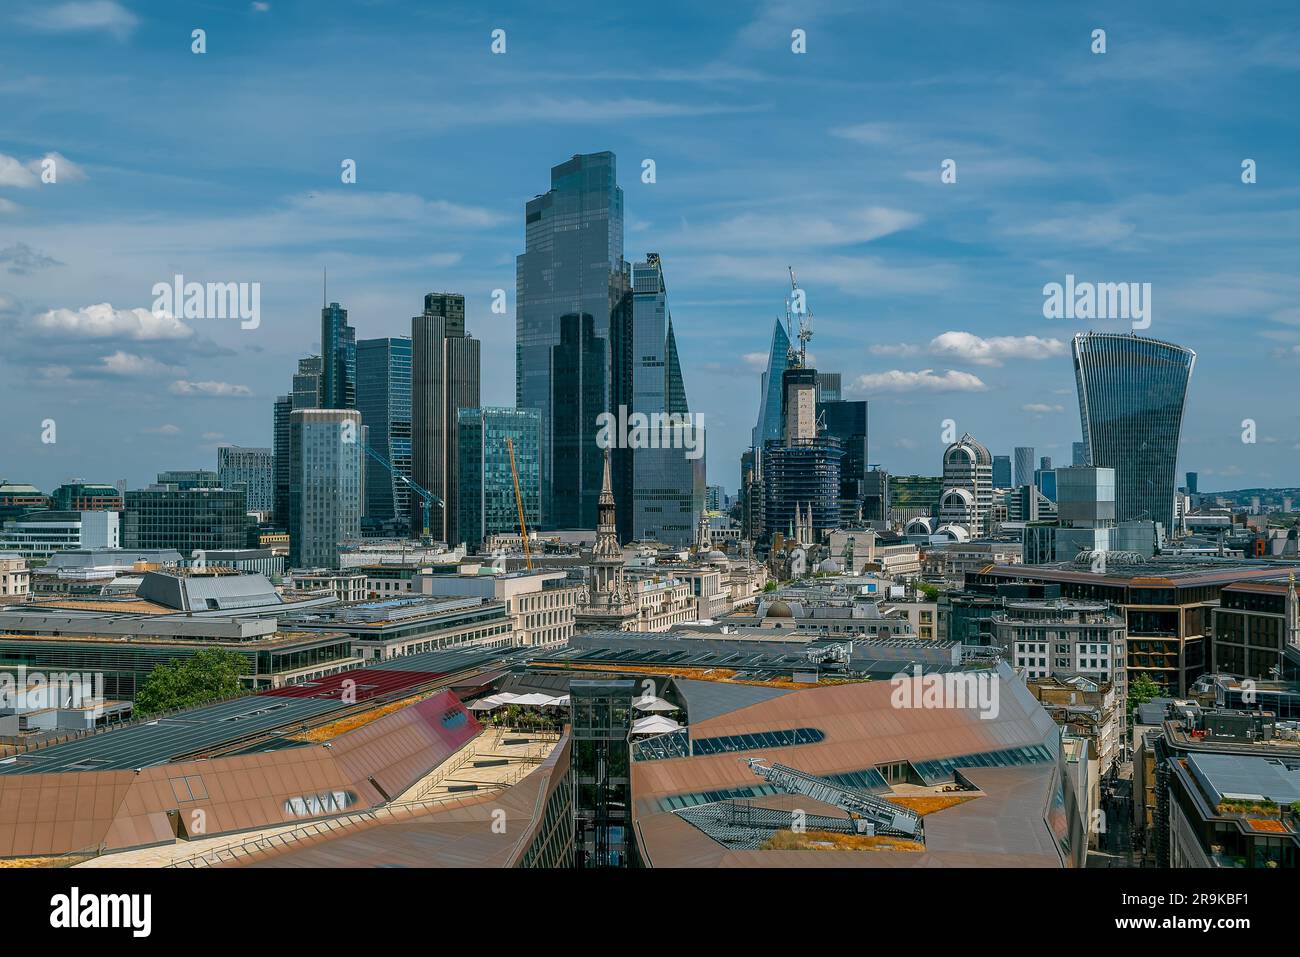 Panoramablick über die Stadt London mit Skyscapers. Herrlicher sonniger Tag mit etwas bewölktem Himmel. Stockfoto